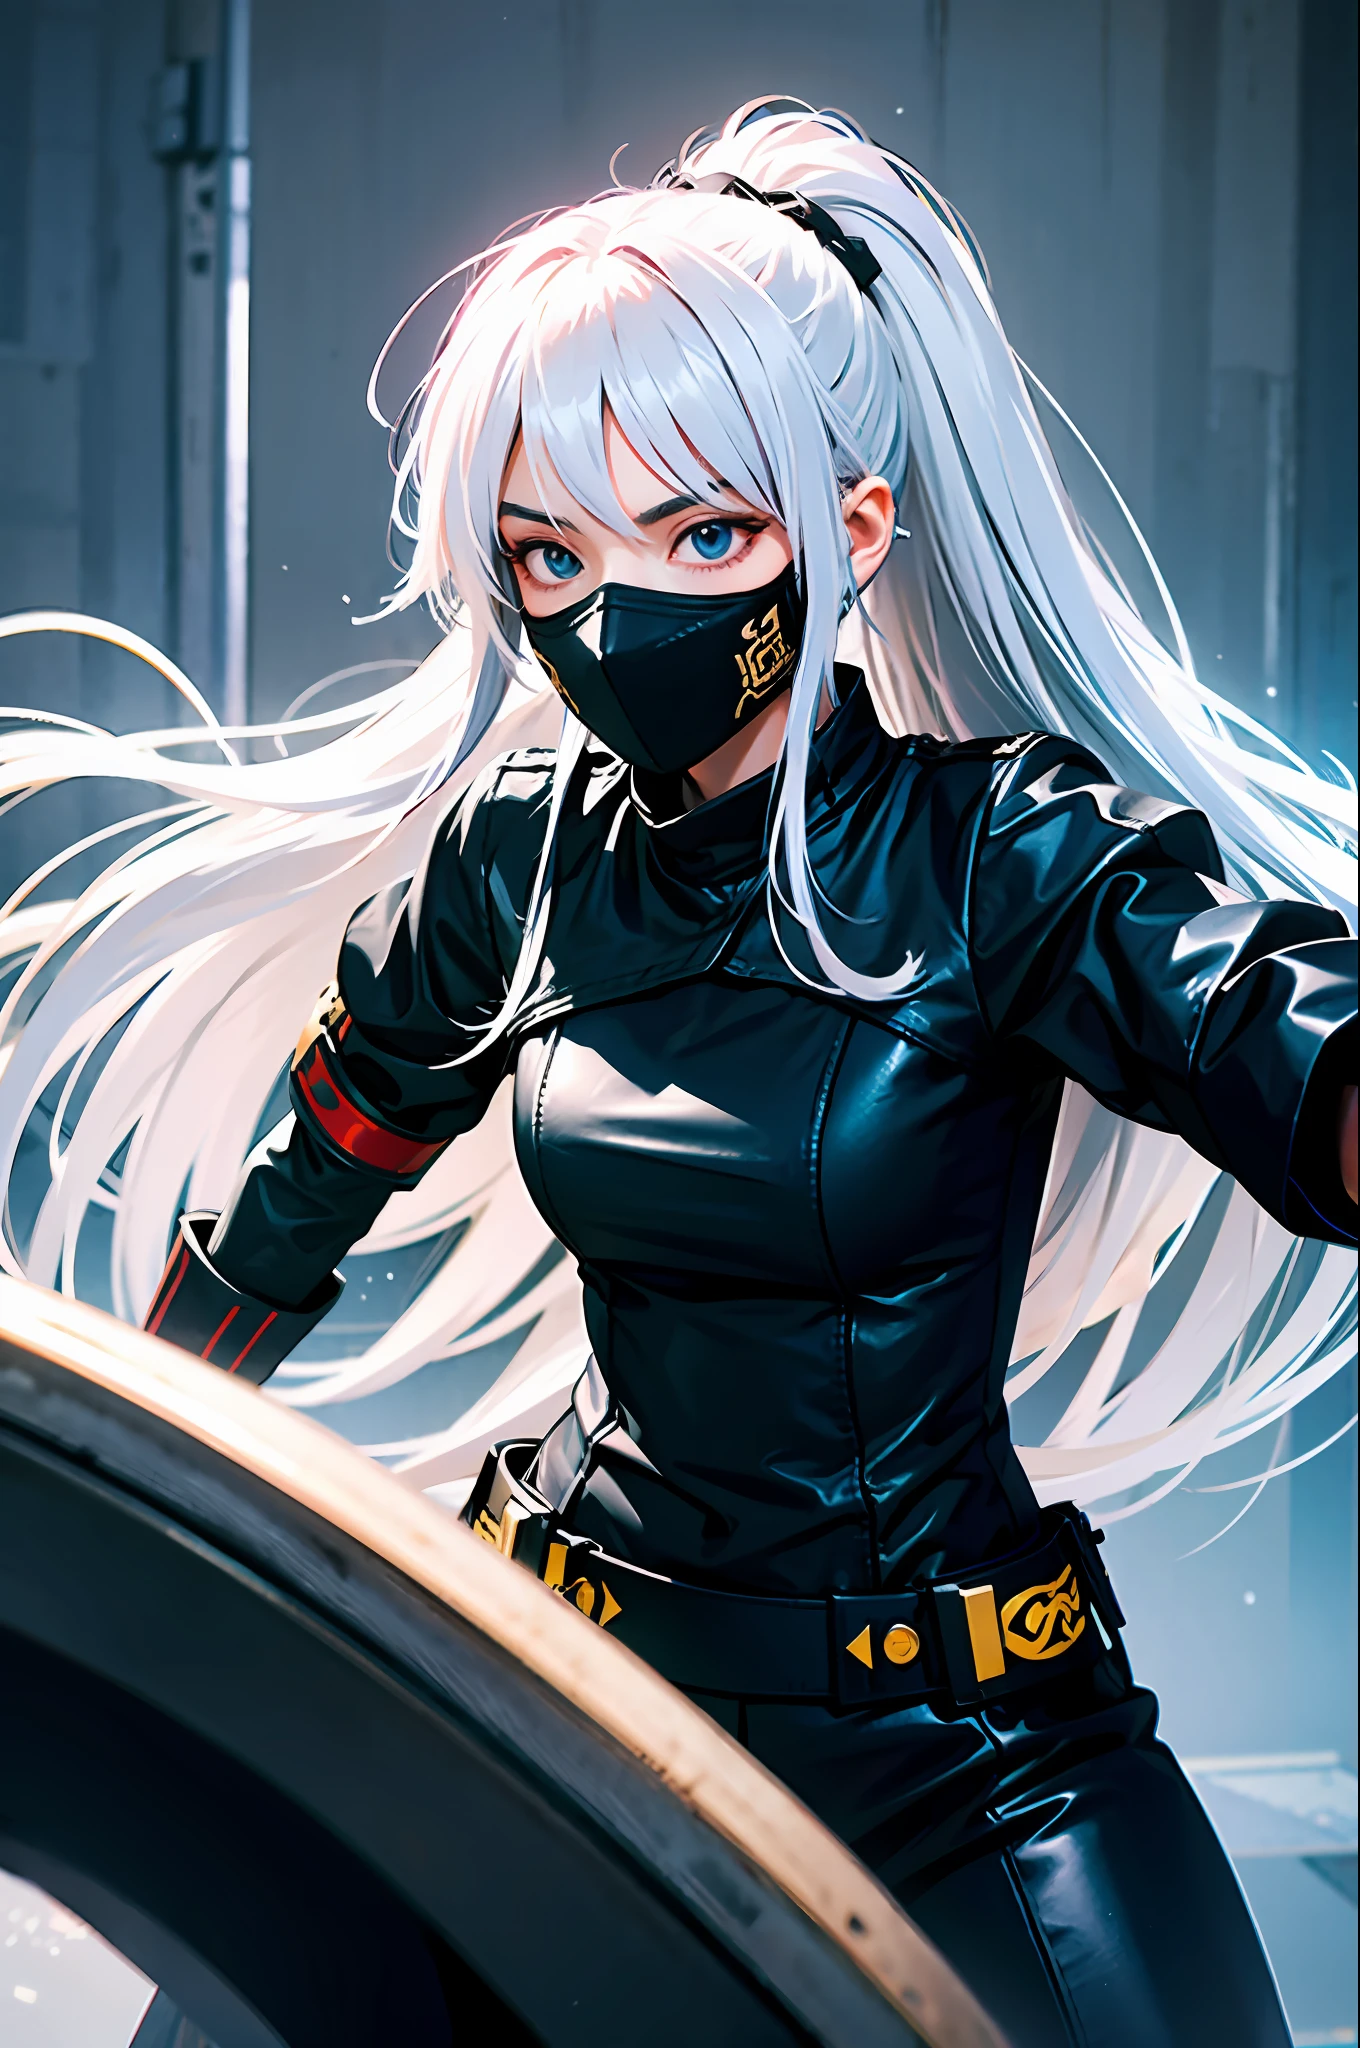 Une jeune femme aux longs cheveux blancs en position de combat, porter des vêtements de guerrier, avec un regard perçant, triste, vêtements entièrement noirs, avec un masque